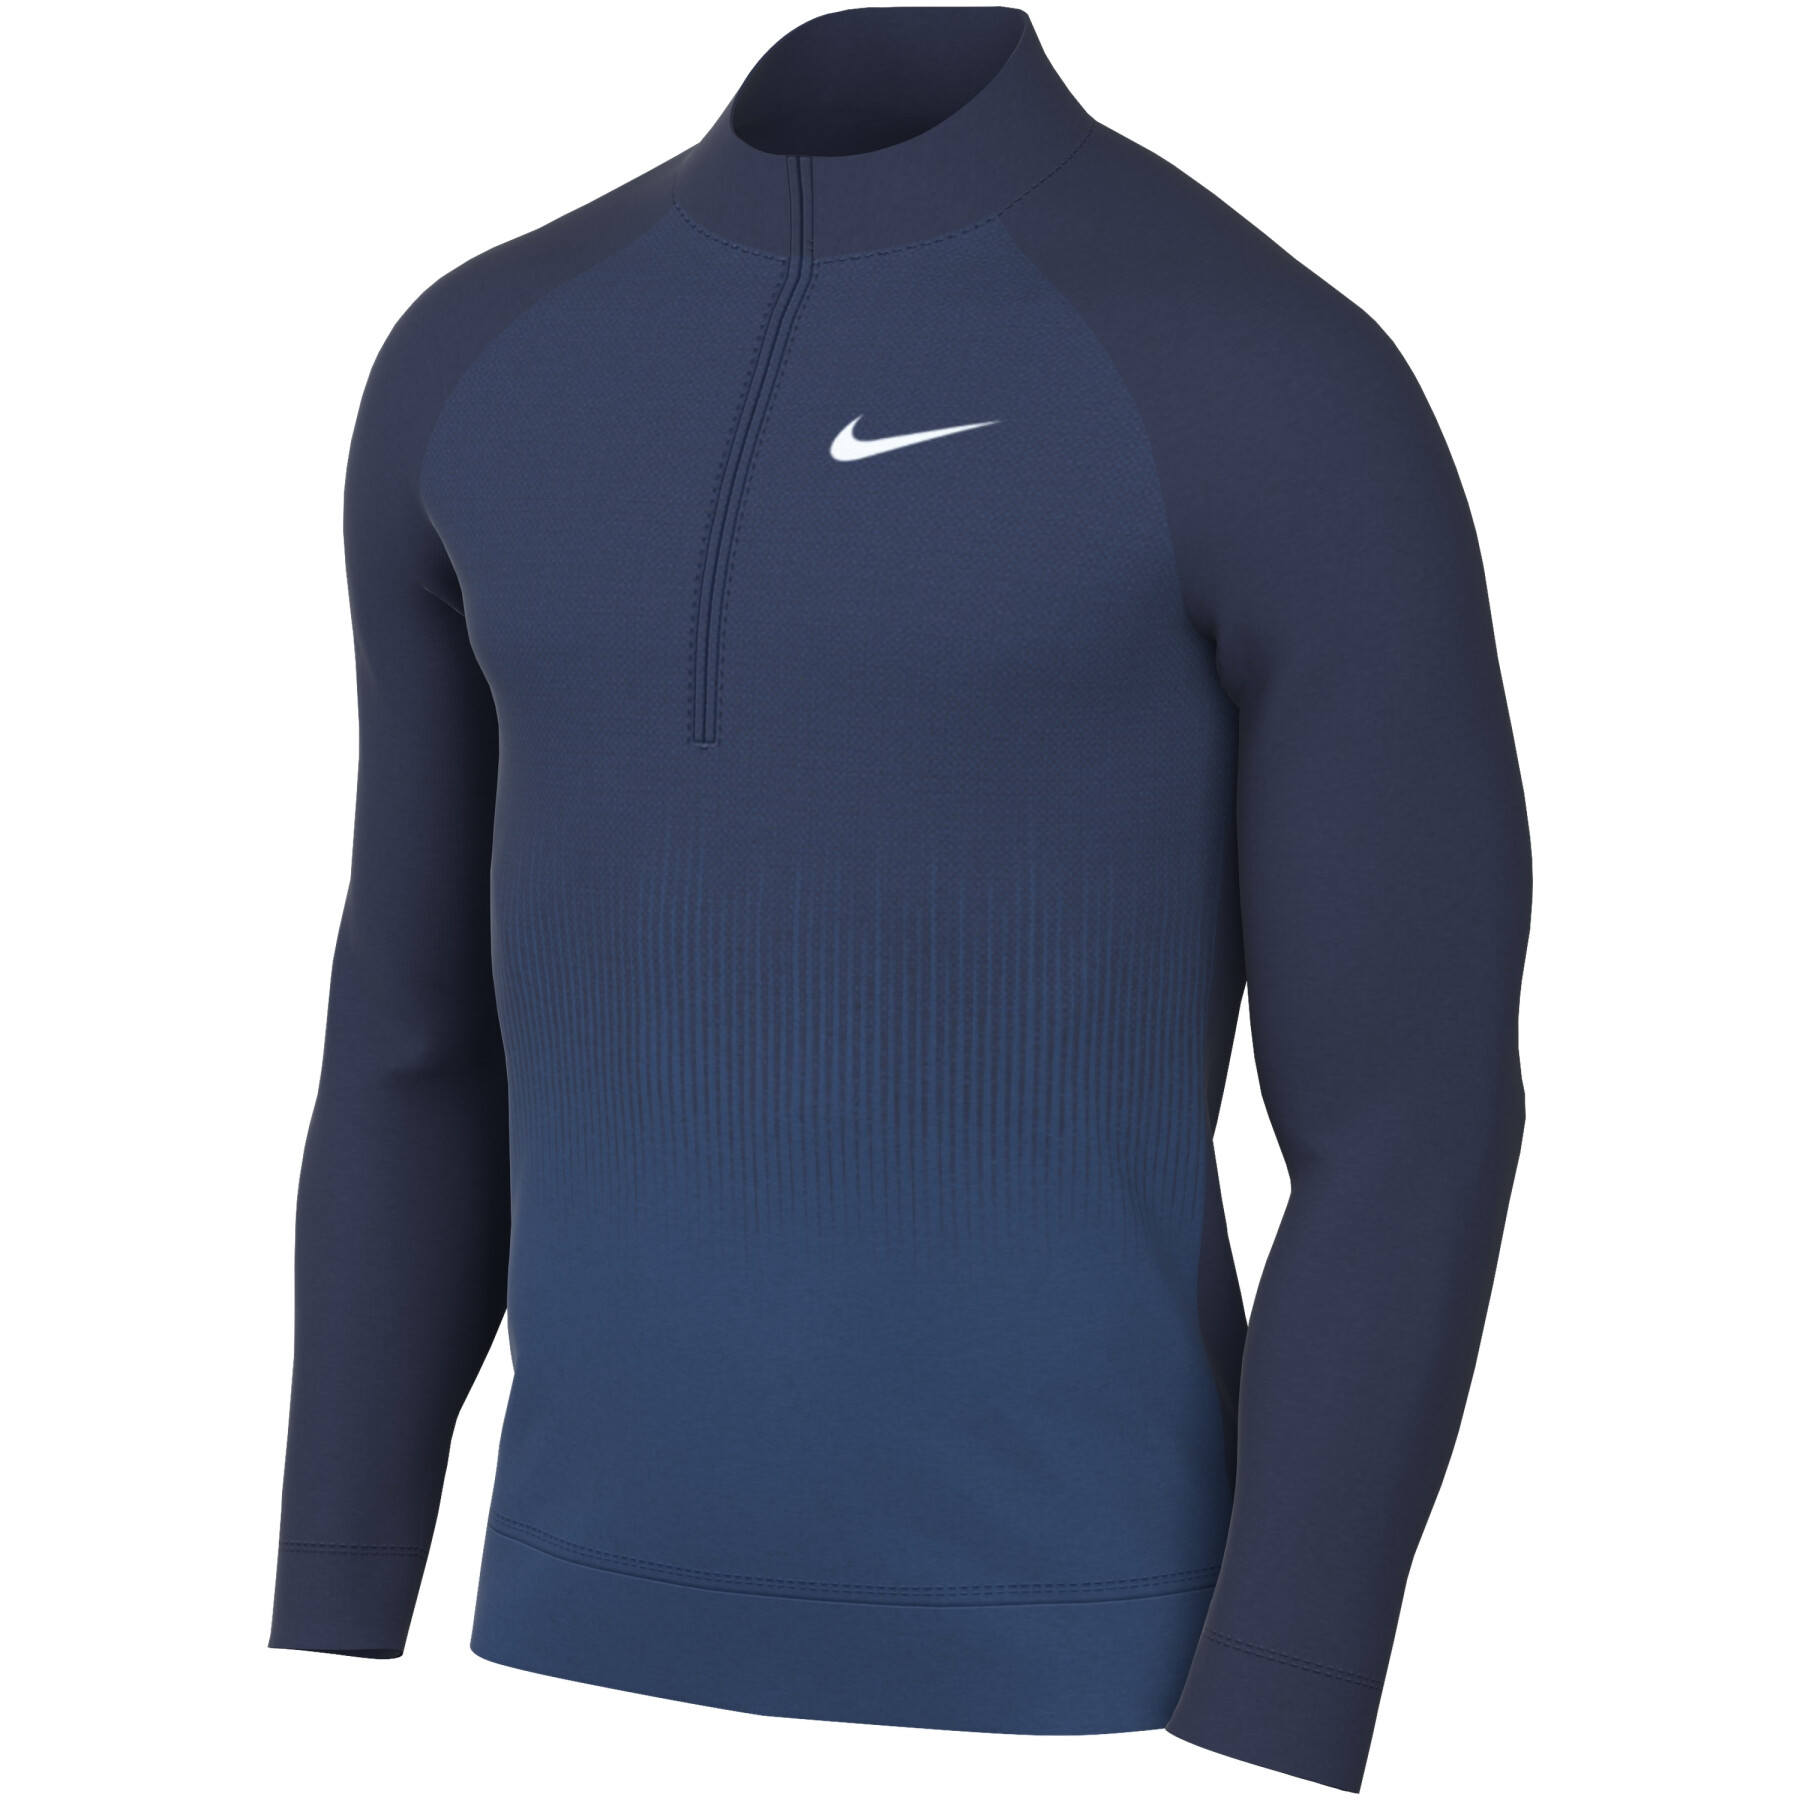 Echt sweatshirt met halve rits Nike Tour